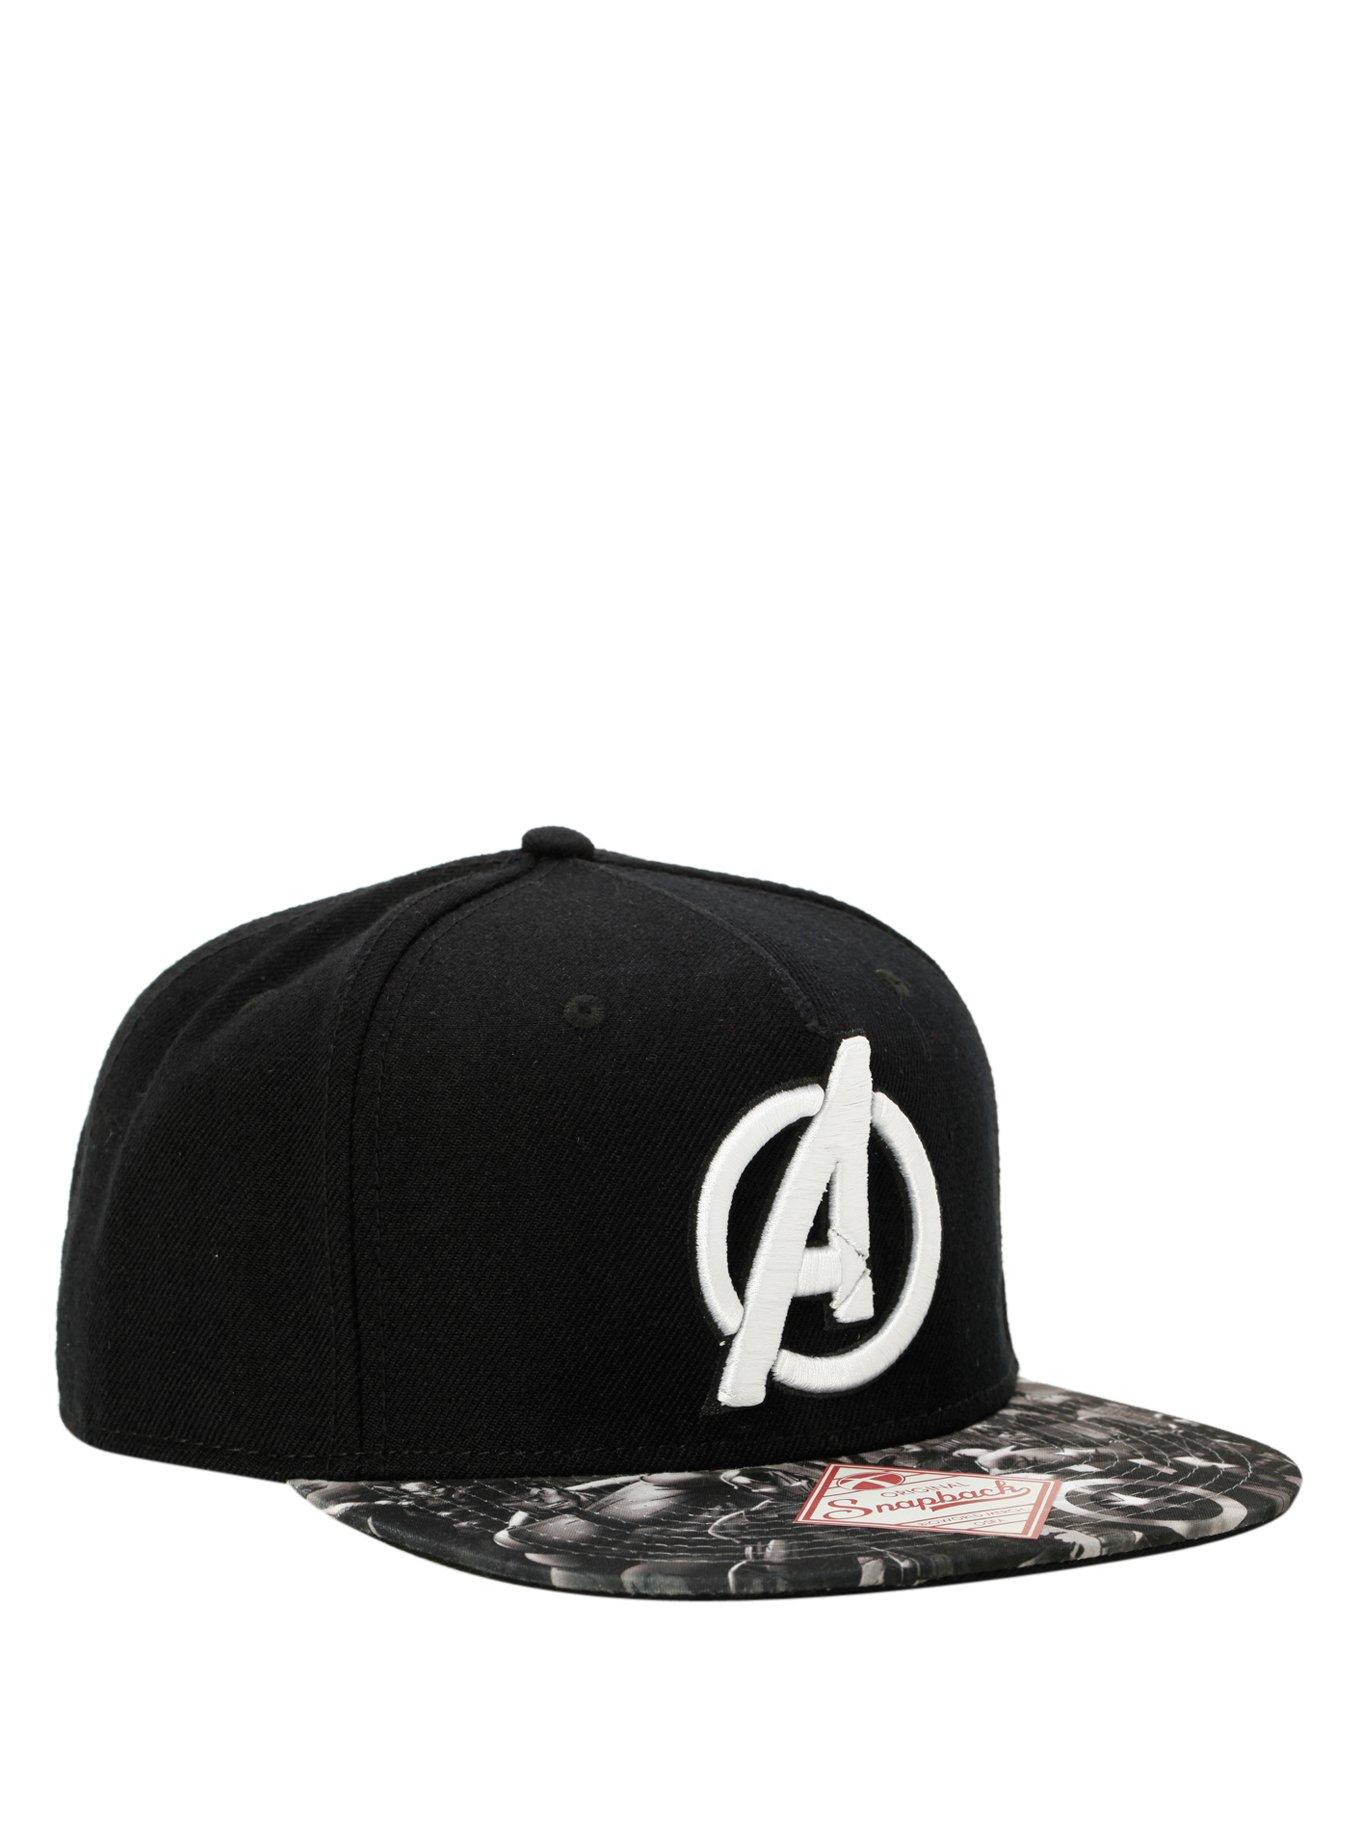 Marvel Avengers Black & White Snapback Hat, , hi-res